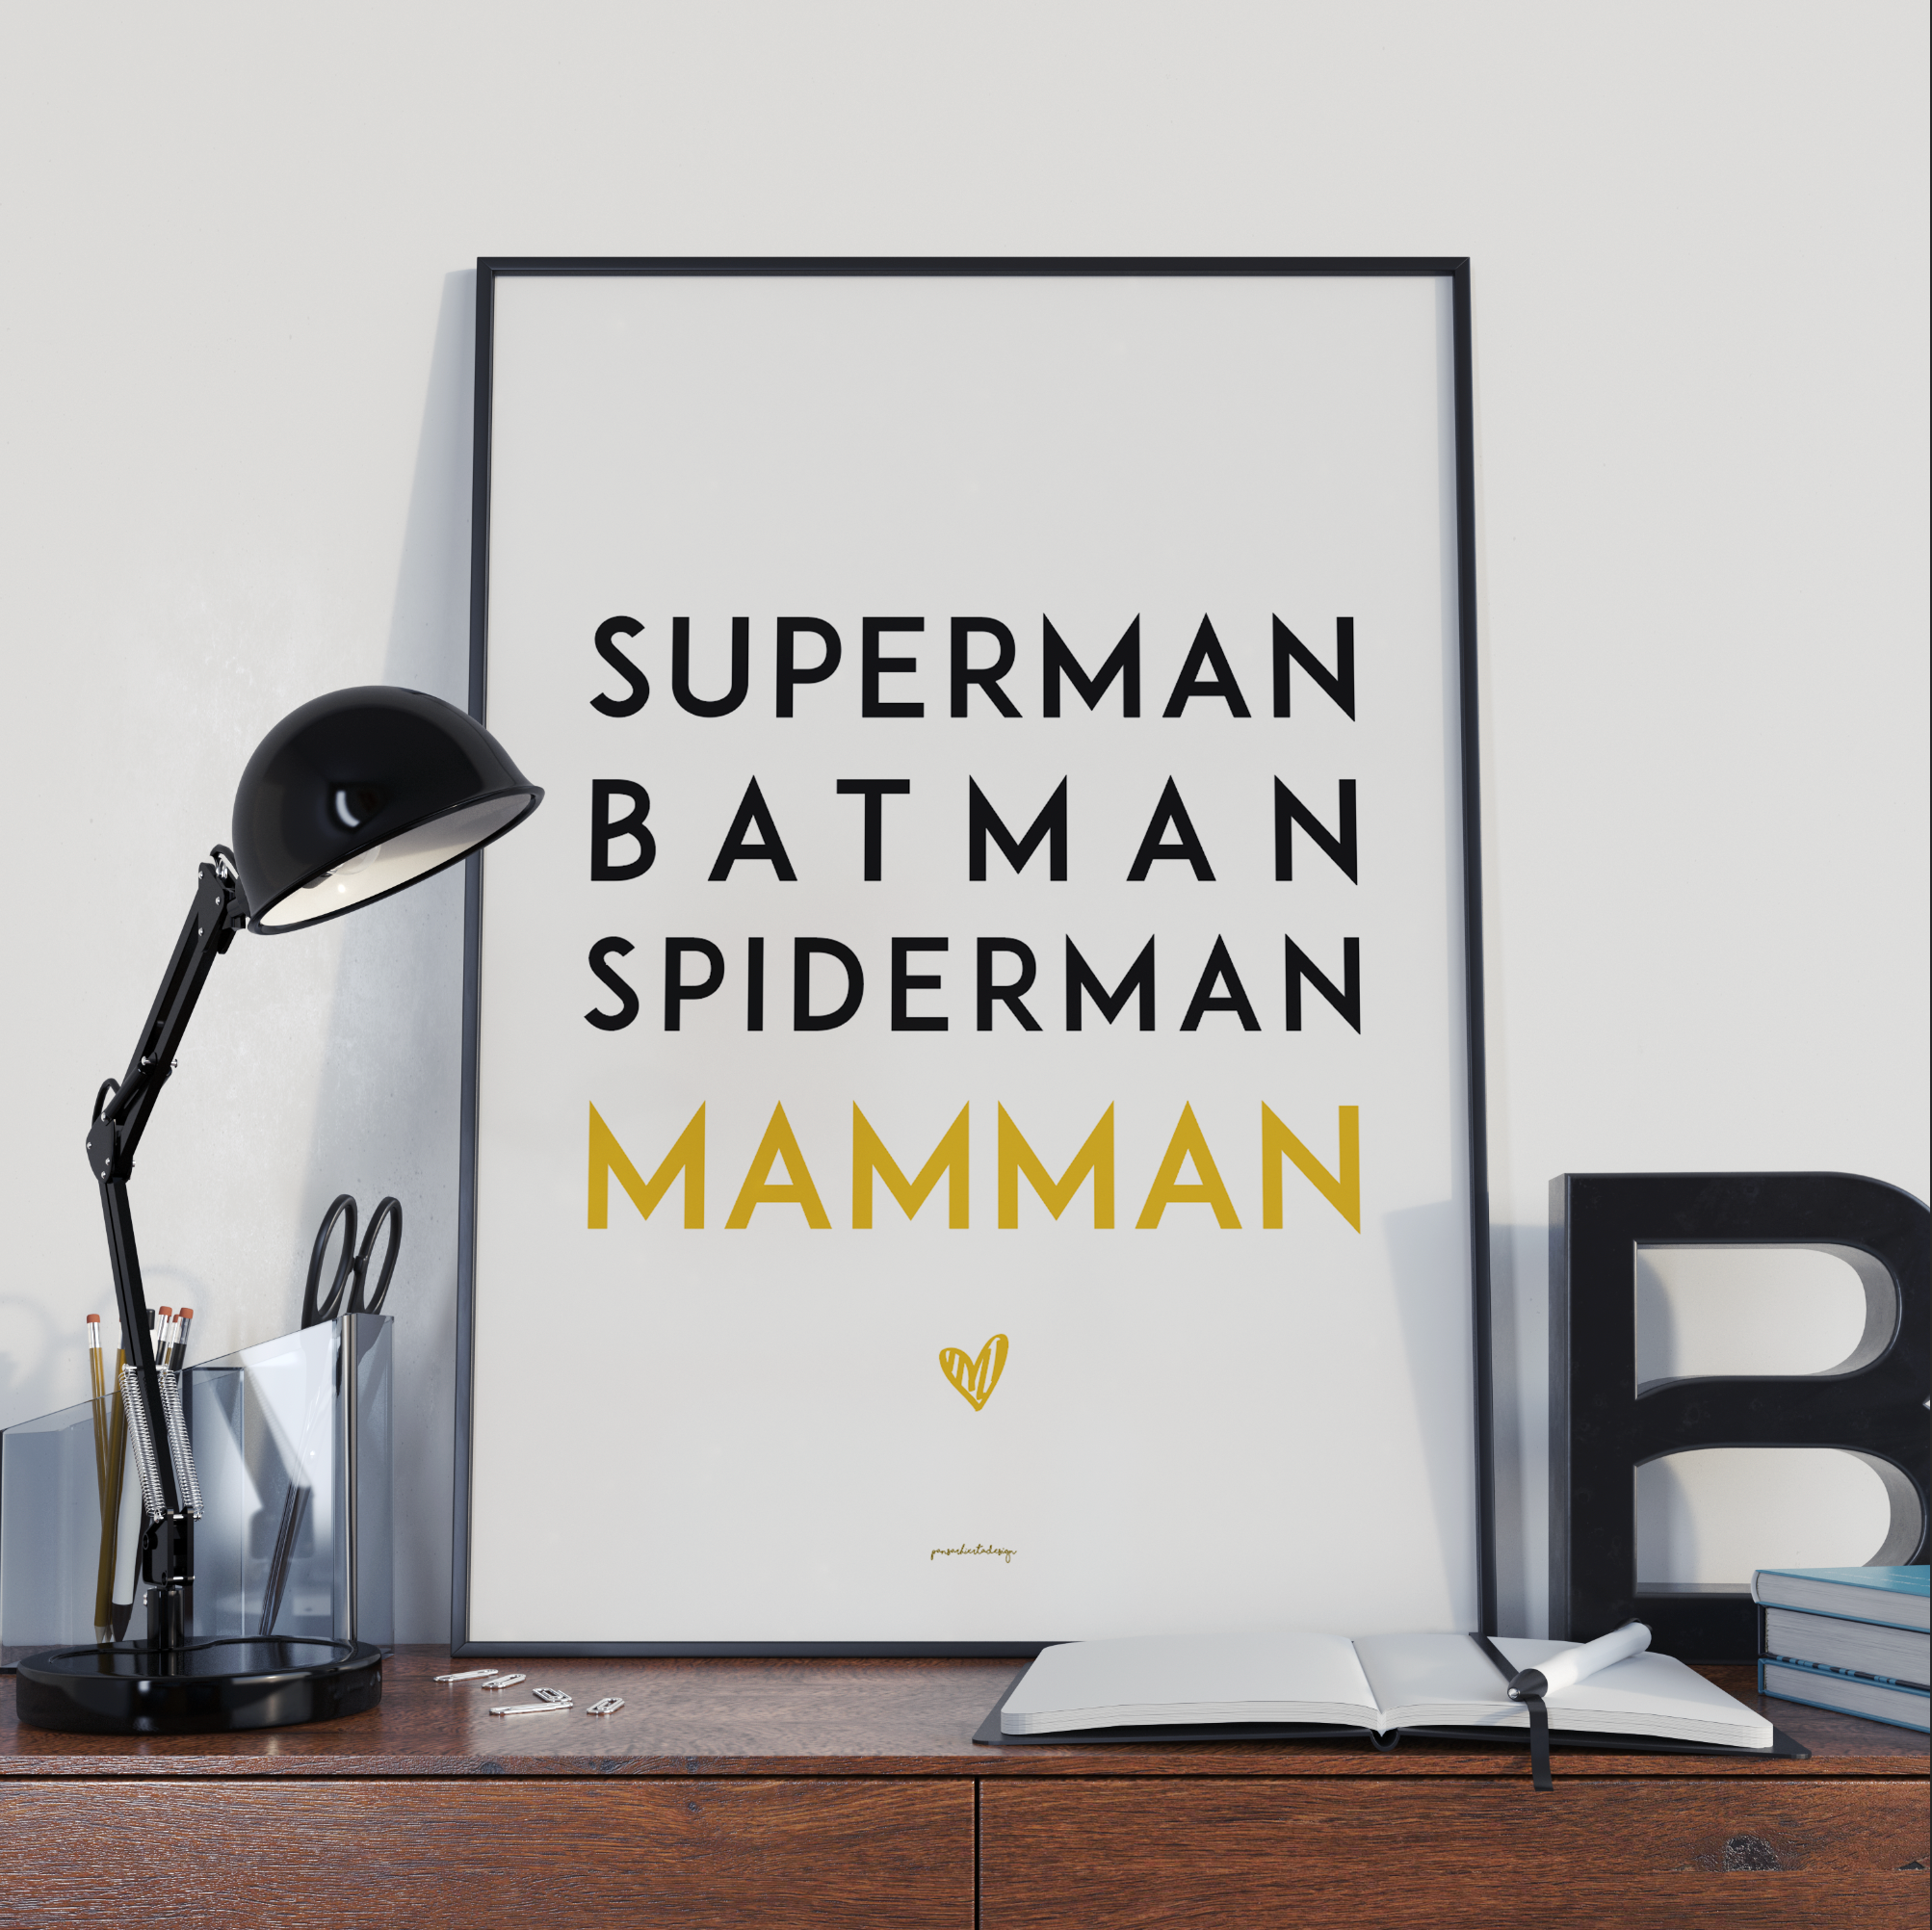 Superman Batman Mamman Posters, affischer, tavlor Pansarhiertadesign